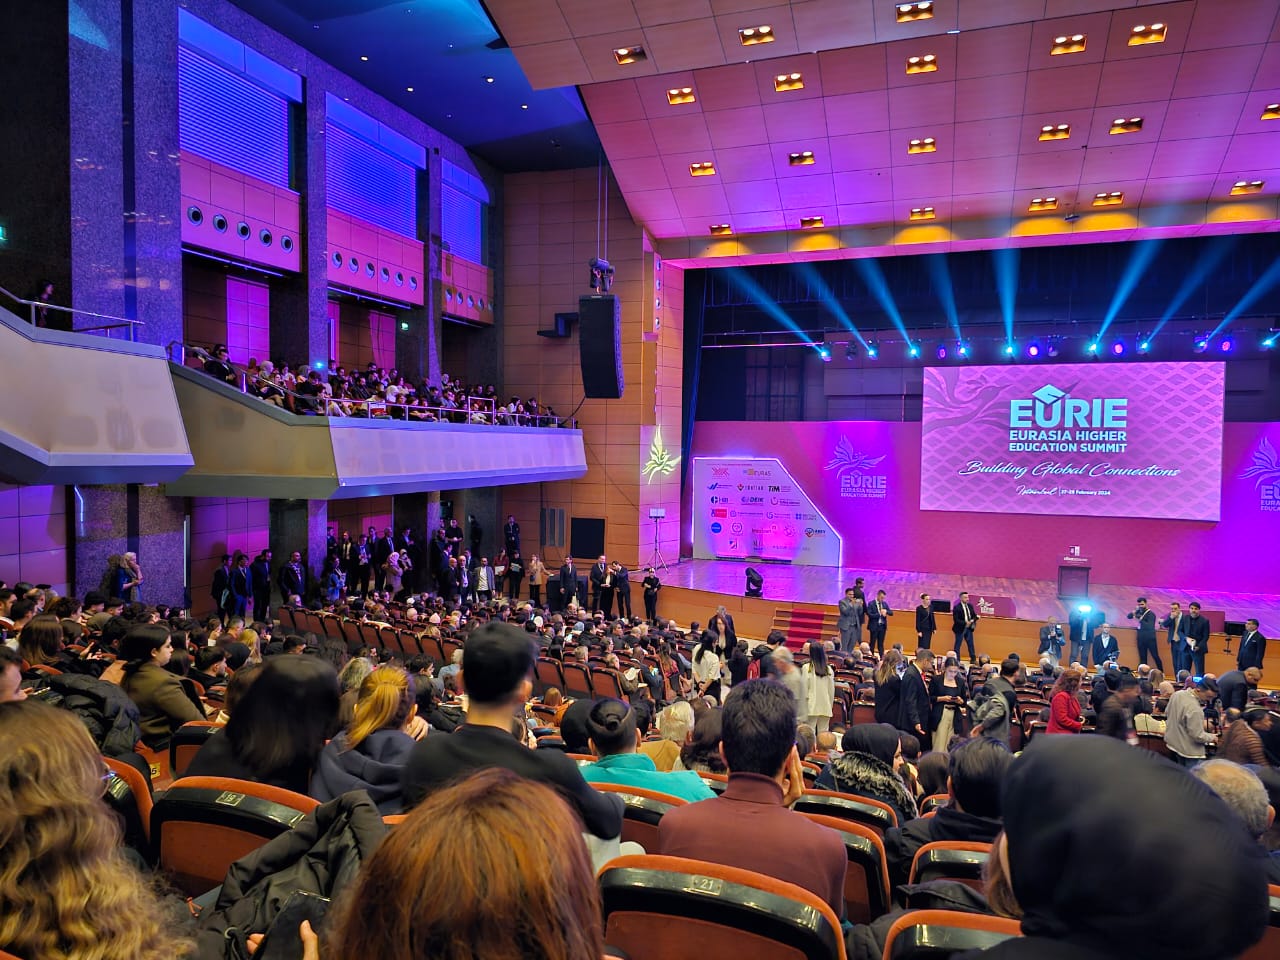 Imagem panorâmica do centro de convenções que sedia o evento